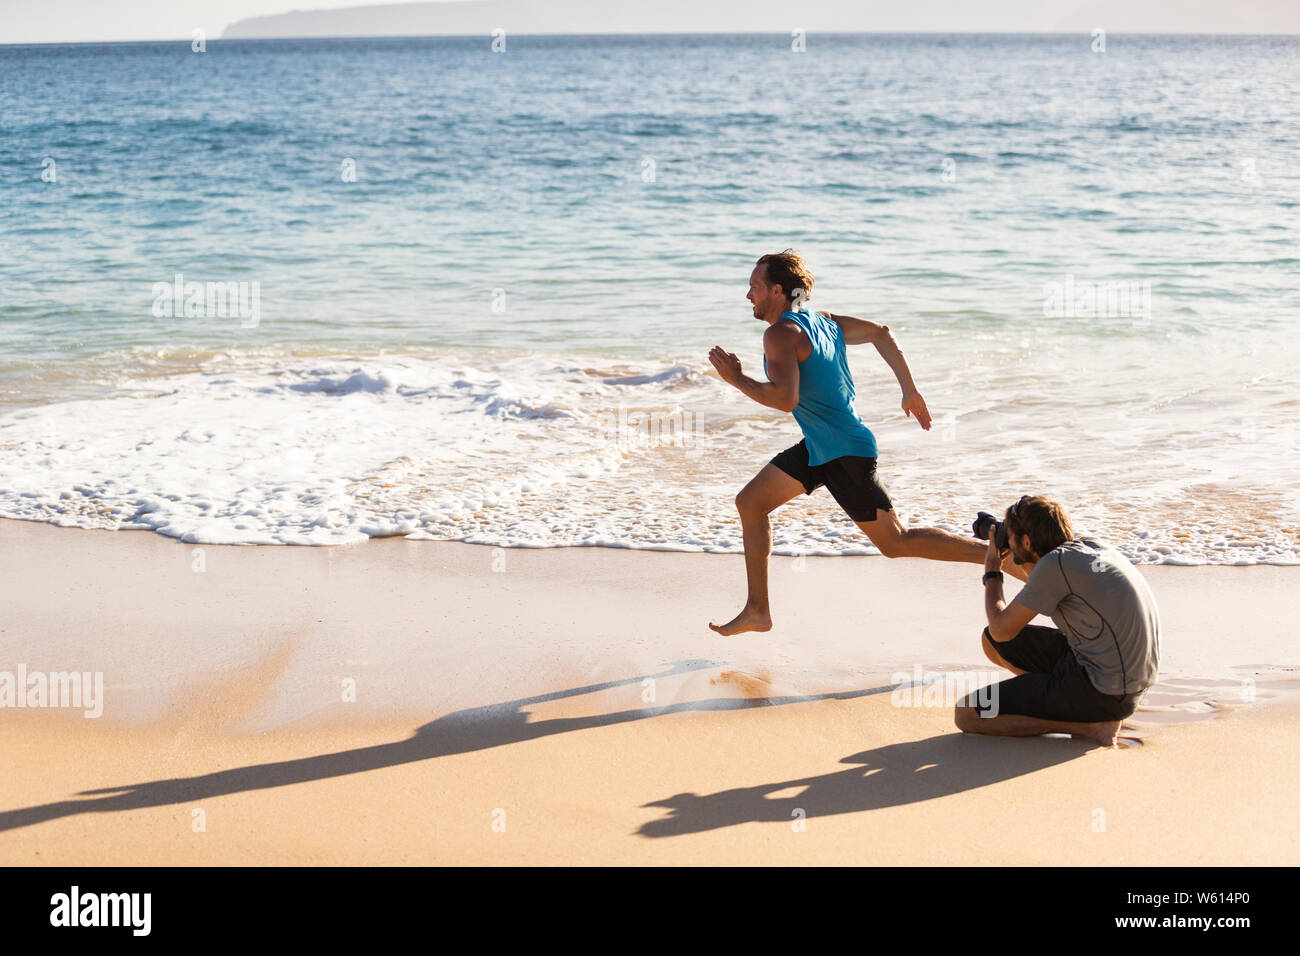 Detrás de las escenas de la sesión de fotos de deportes masculinos modelo atleta corriendo de fotógrafo tomando fotos para el deporte photoshoot. El BTS en la playa. Foto de stock